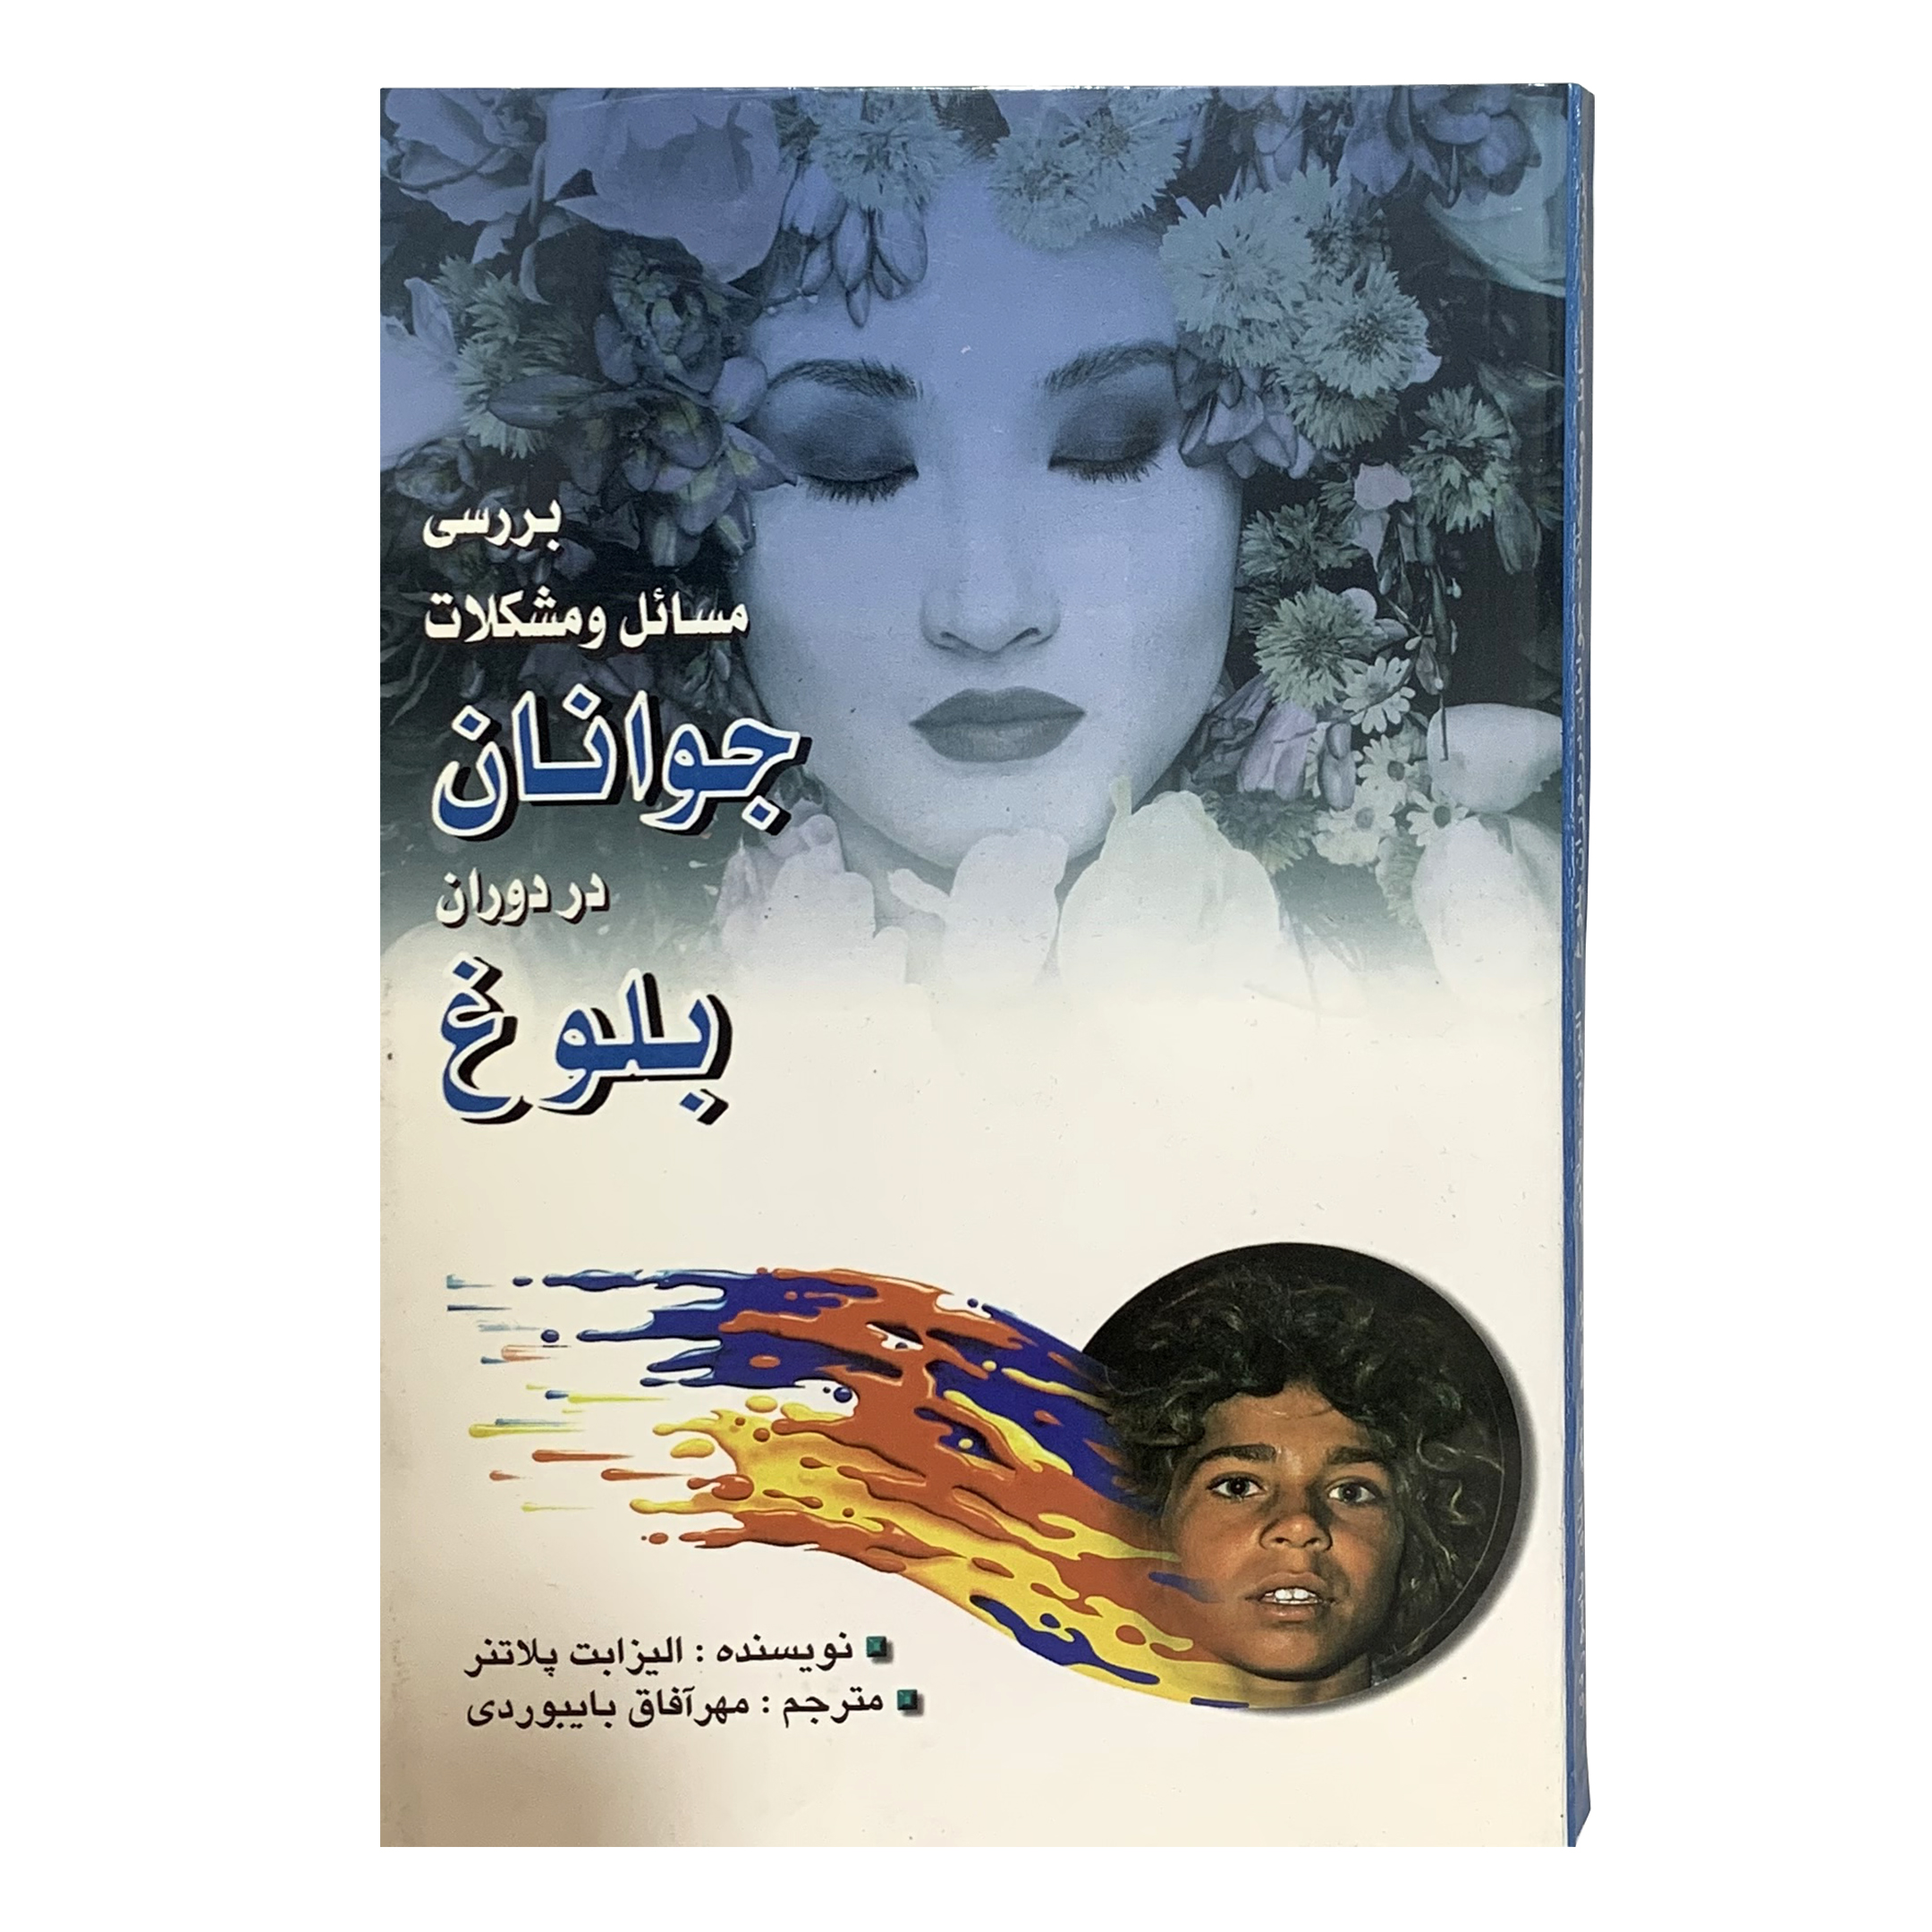 کتاب بررسی مسائل و مشکلات جوانان در دوران بلوغ اثر الیزابت پلاتنر انتشارات محمد